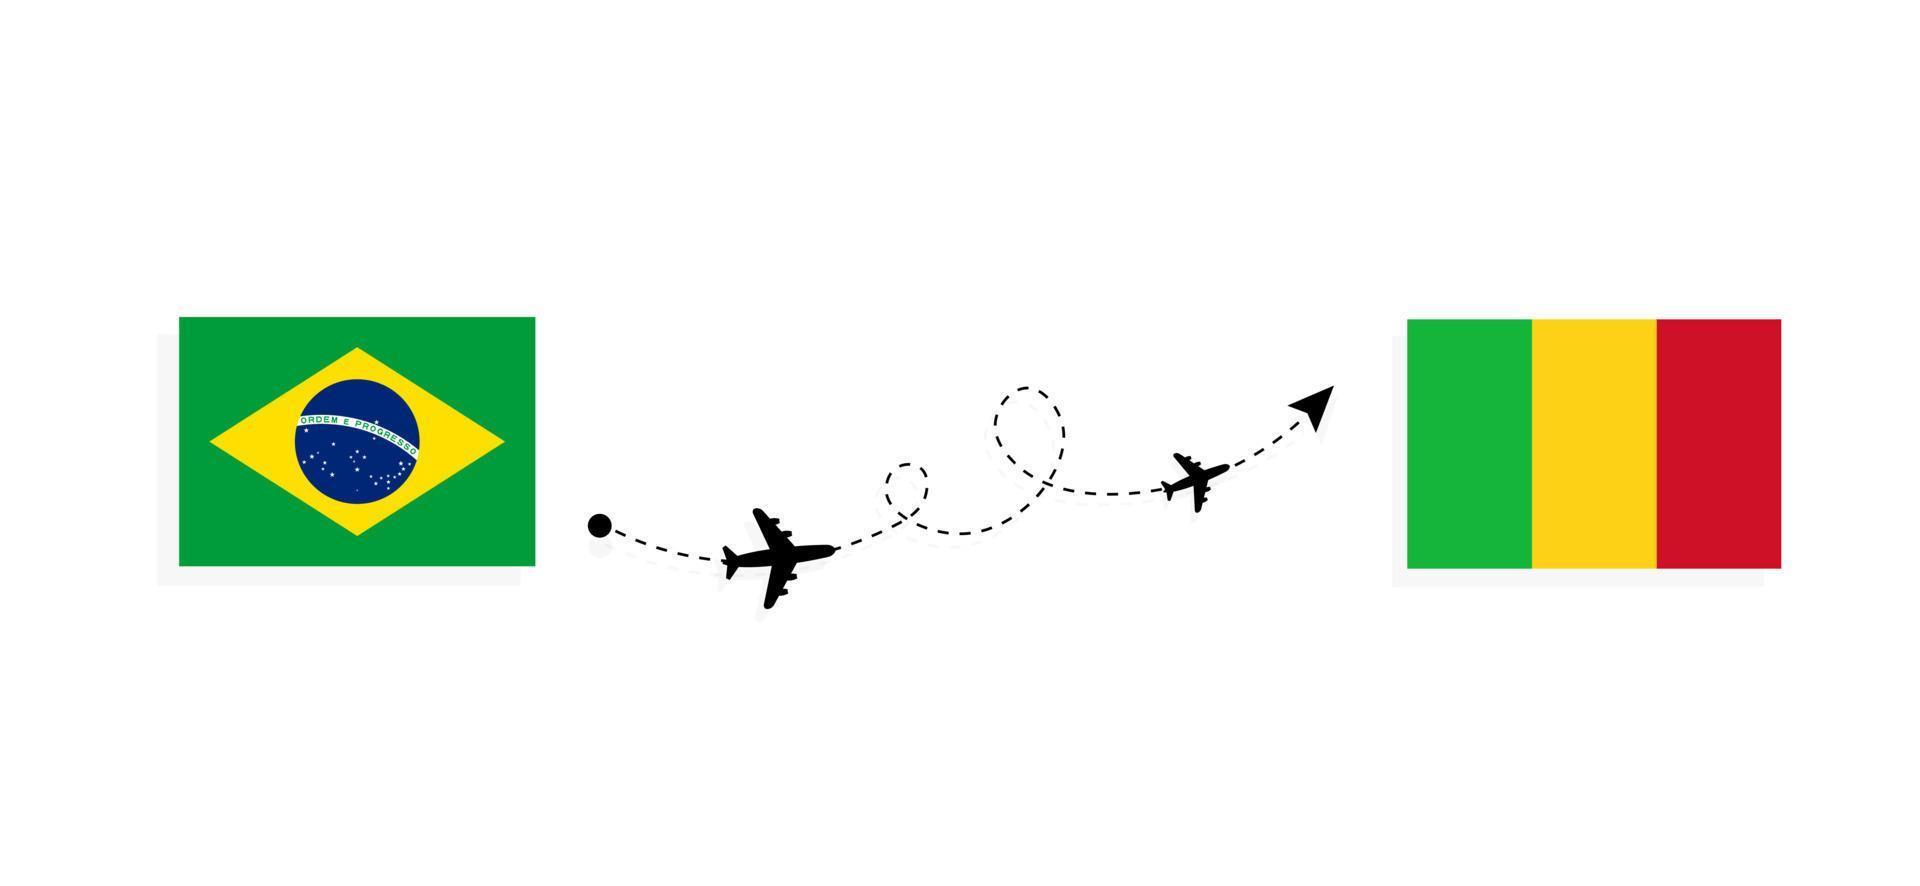 vol et voyage du brésil au mali par concept de voyage en avion de passagers vecteur